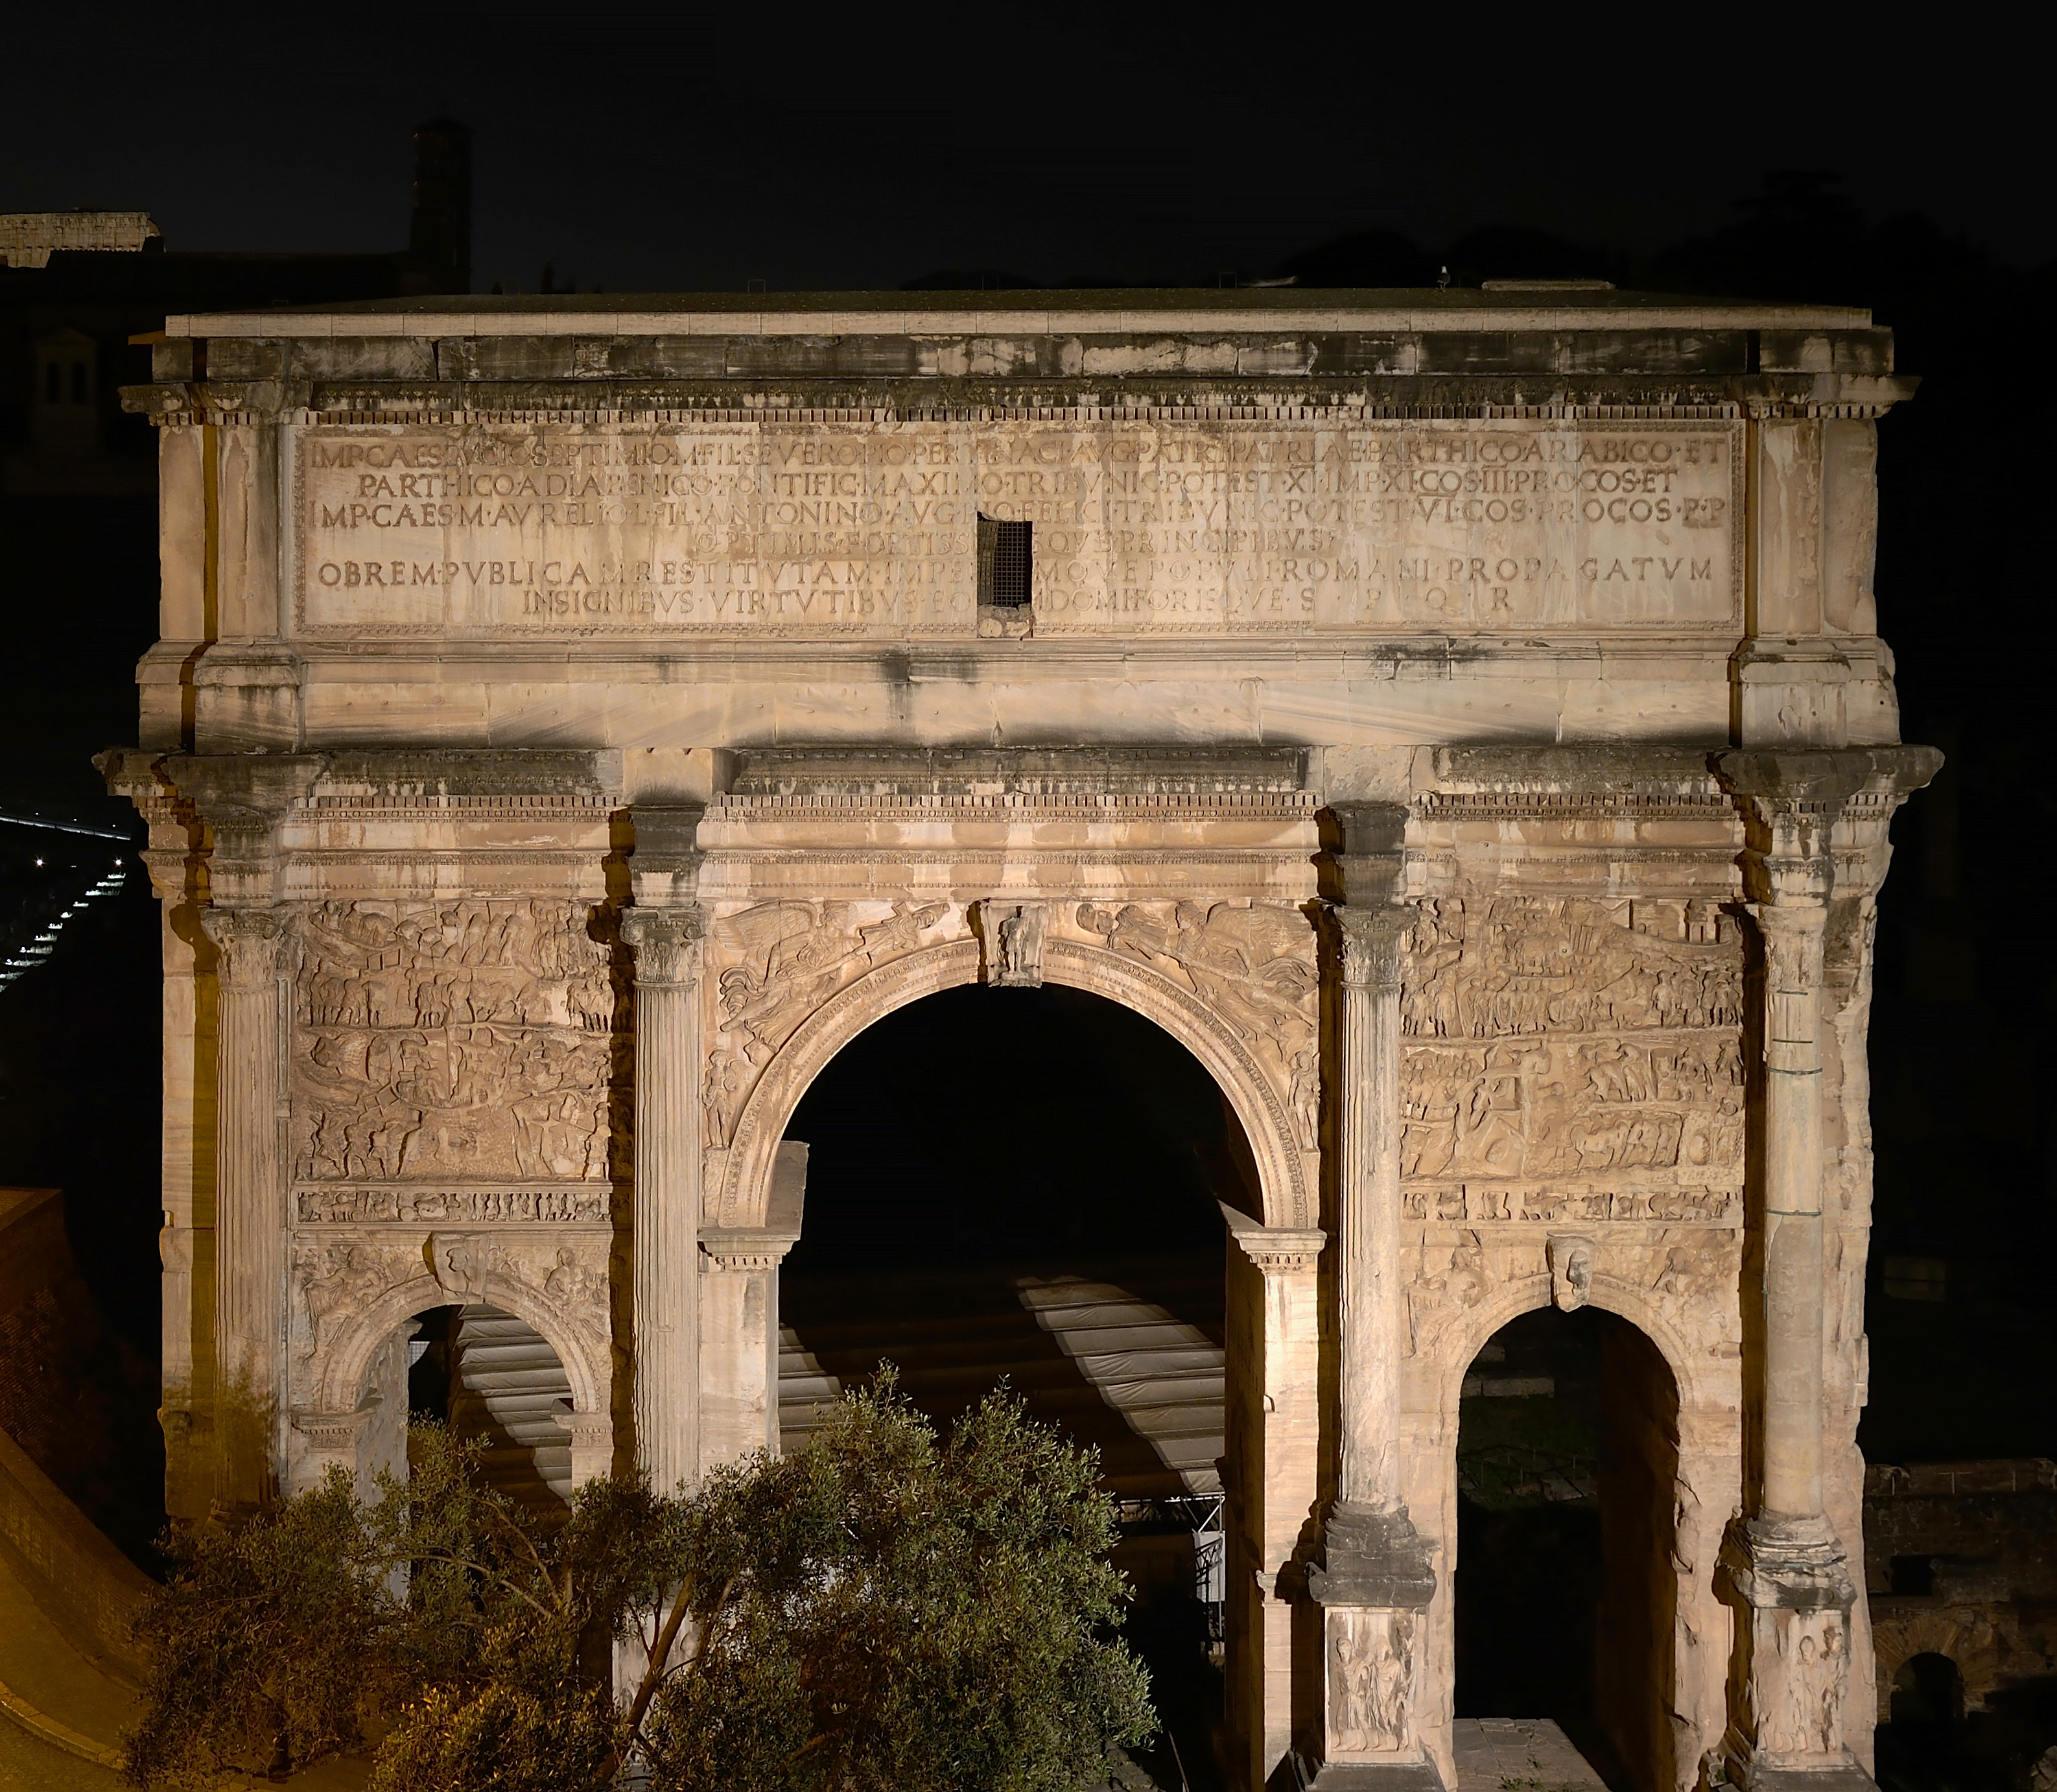 Arch of Septimius Severus at night